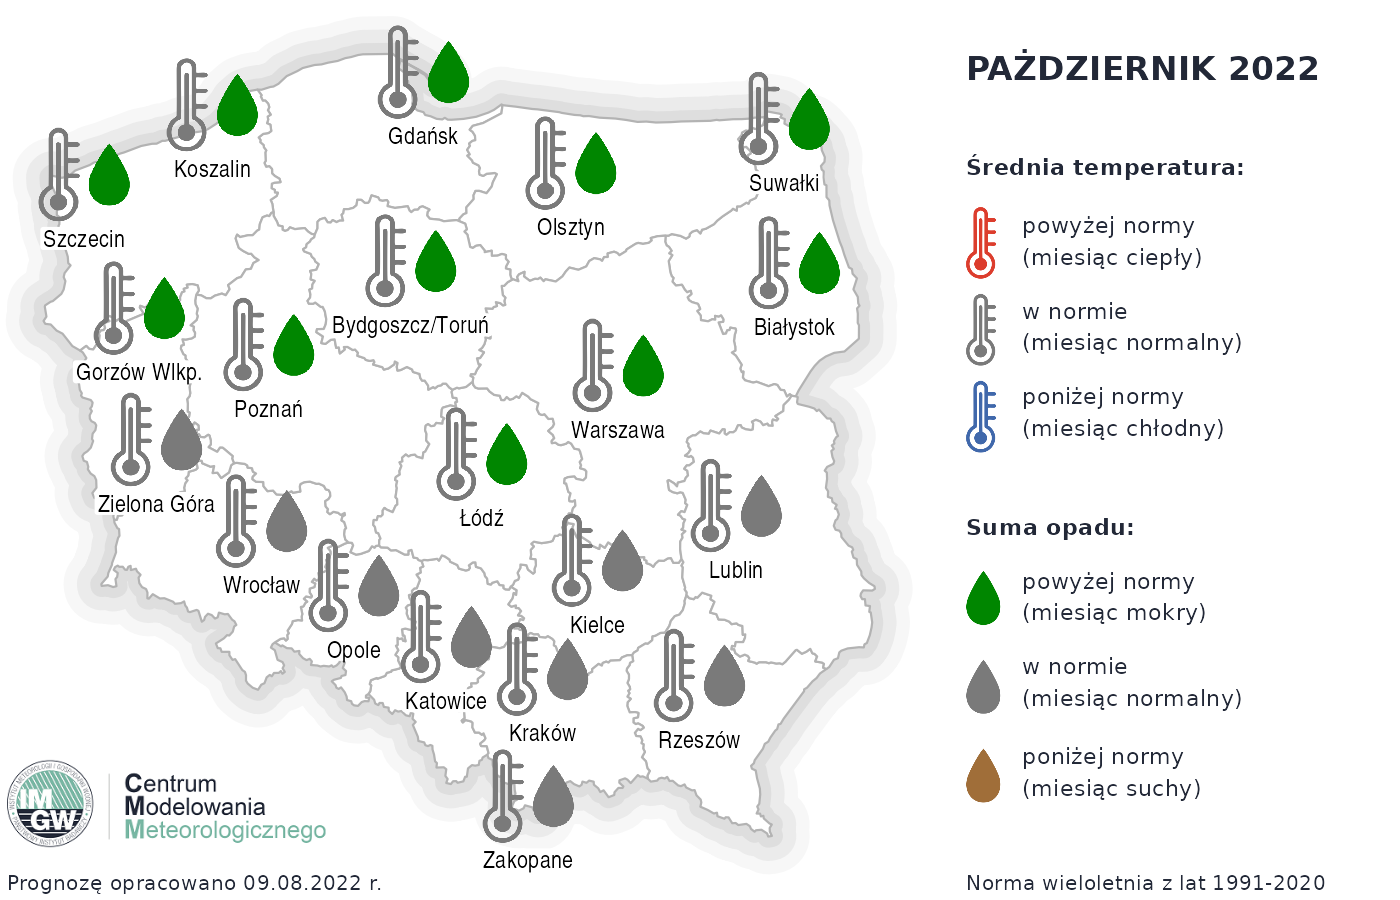 Prognoza średniej miesięcznej temperatury powietrza i miesięcznej sumy opadów atmosferycznych na październik 2022 r. dla wybranych miast w Polsce.